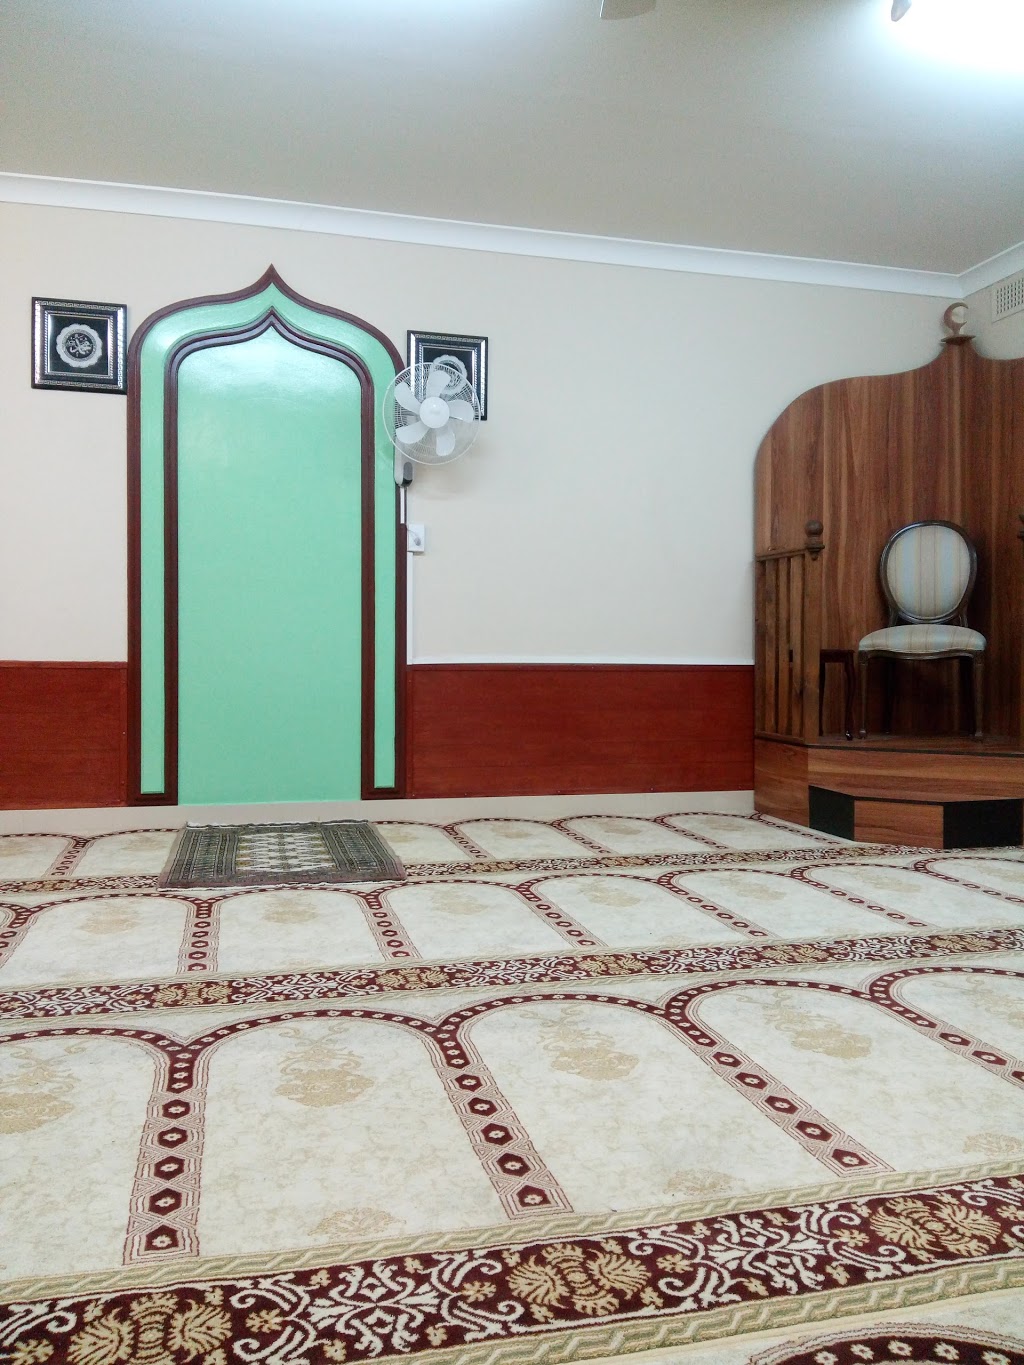 Warwick Farm Musallah | mosque | 6/12/14 Hume Hwy, Warwick Farm NSW 2170, Australia